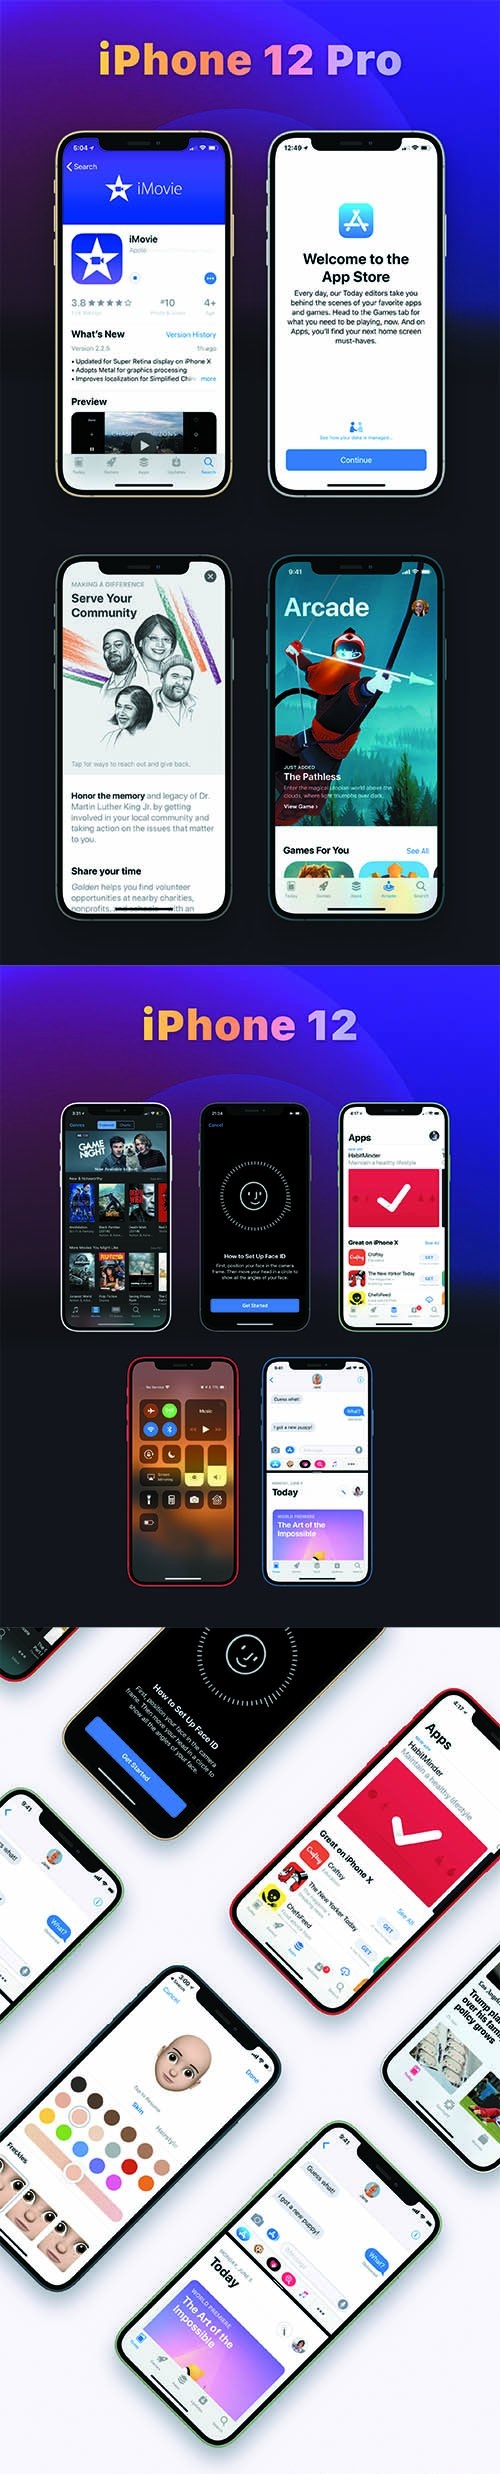 New iPhone 12